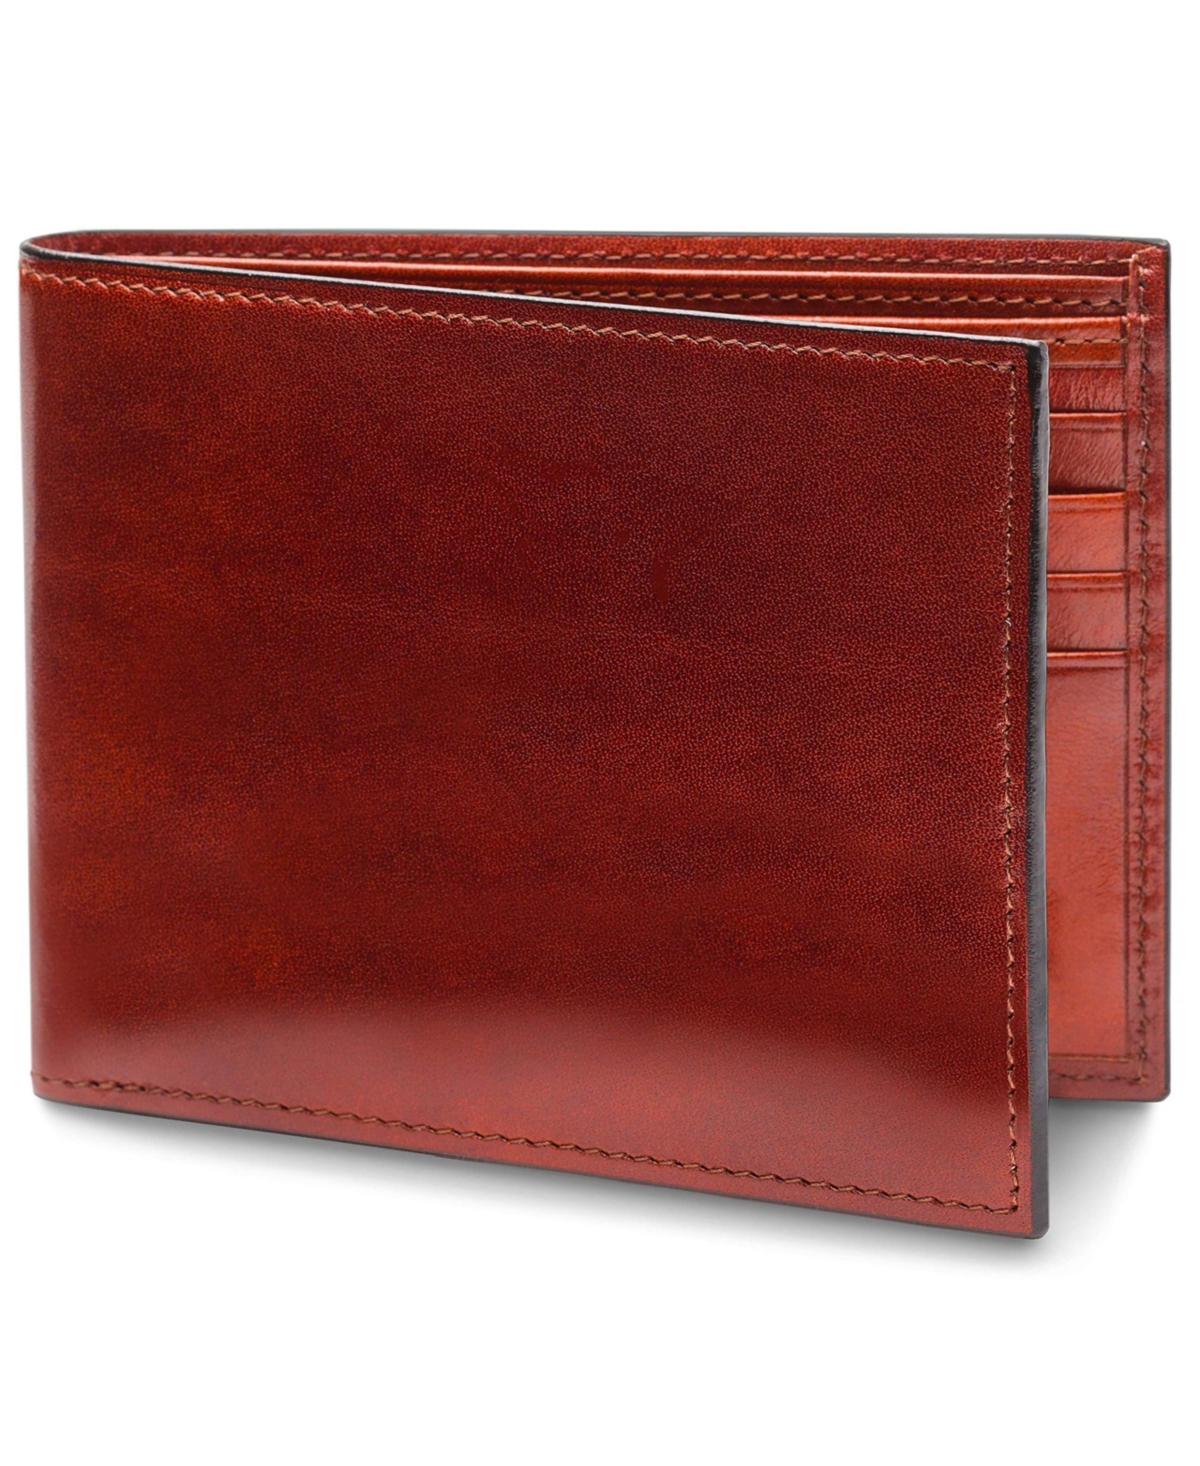 Men's 8 Pocket Wallet in Old Leather - Rfid - Cognac